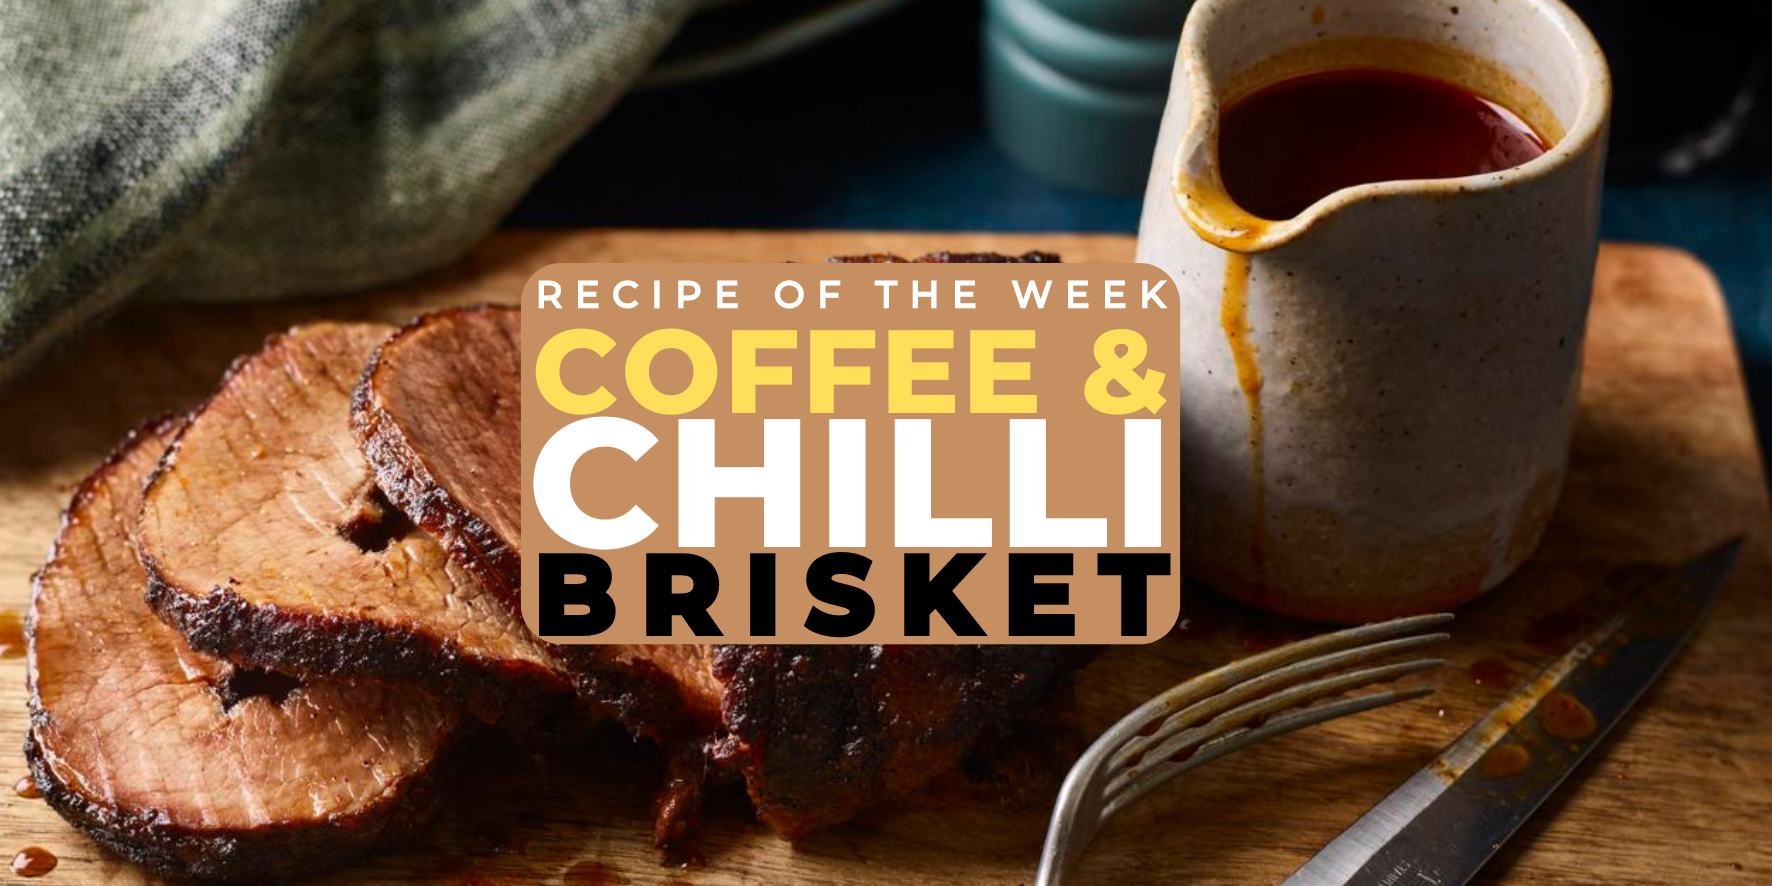 Coffee & Chilli Brisket Recipe